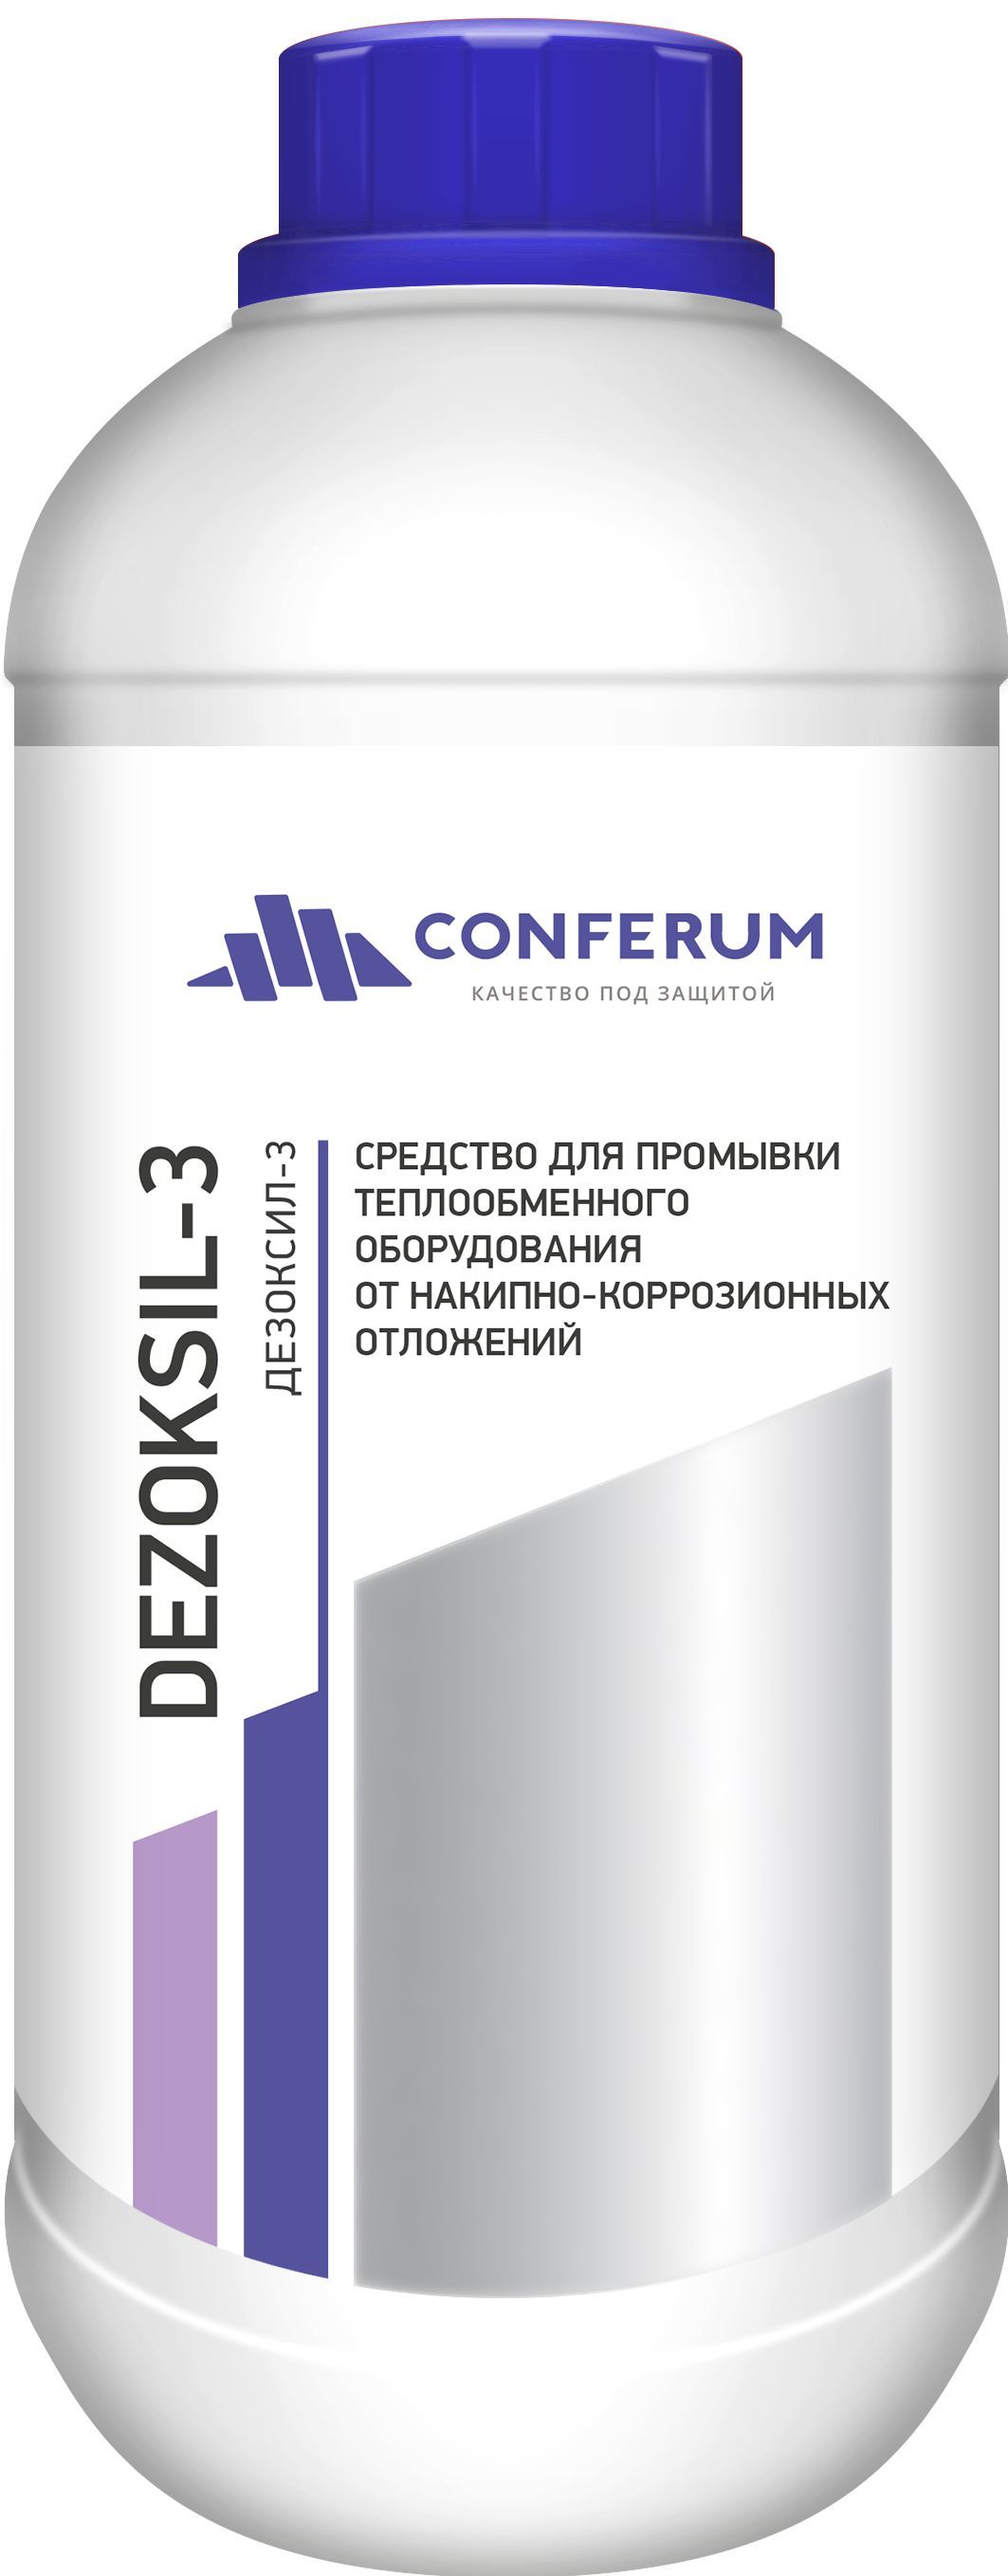 Средстводляпромывкисистемыотопления(Дезоксил-3)1кг